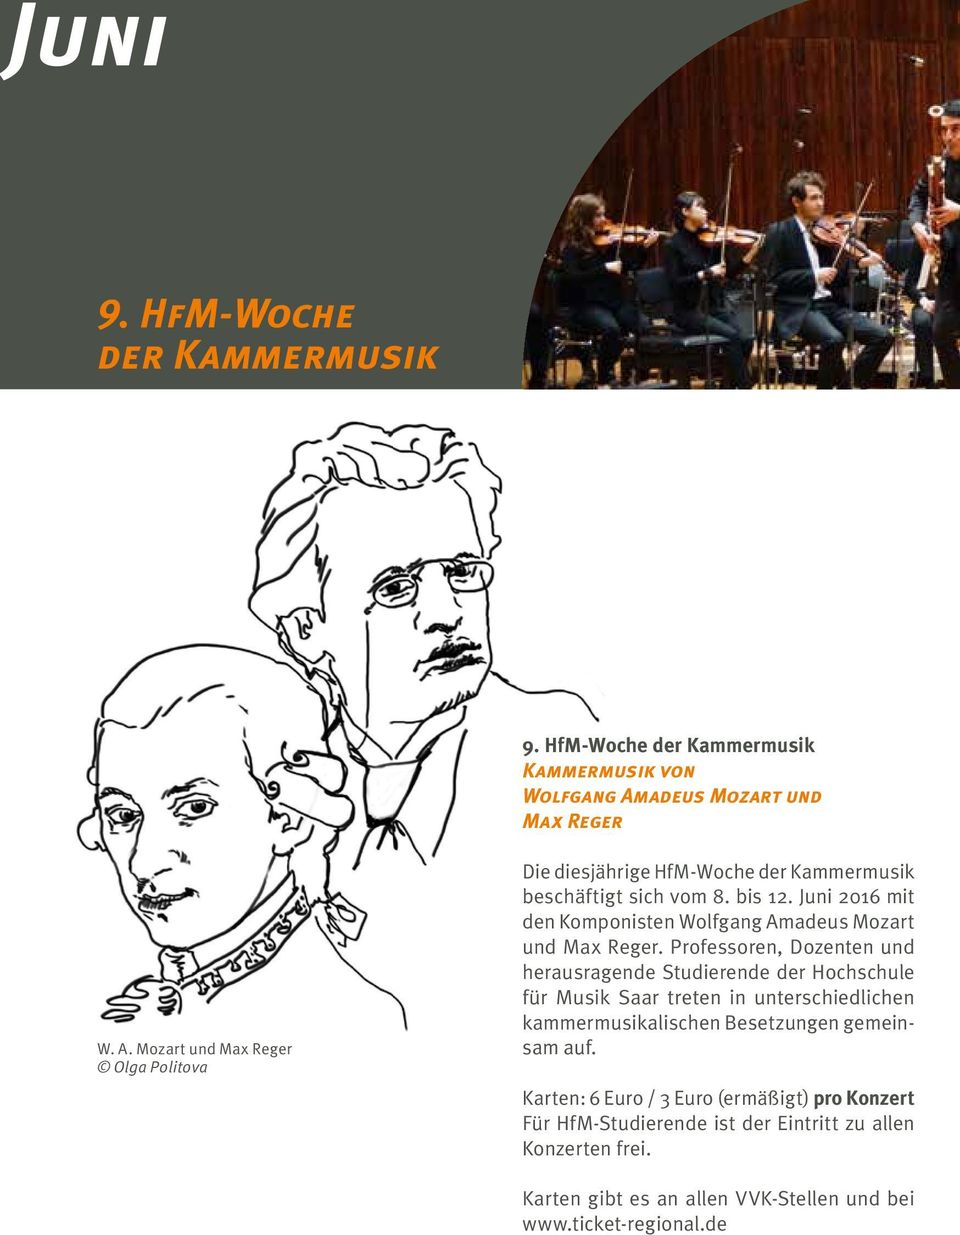 Juni 2016 mit den Komponisten Wolfgang Amadeus Mozart und Max Reger.